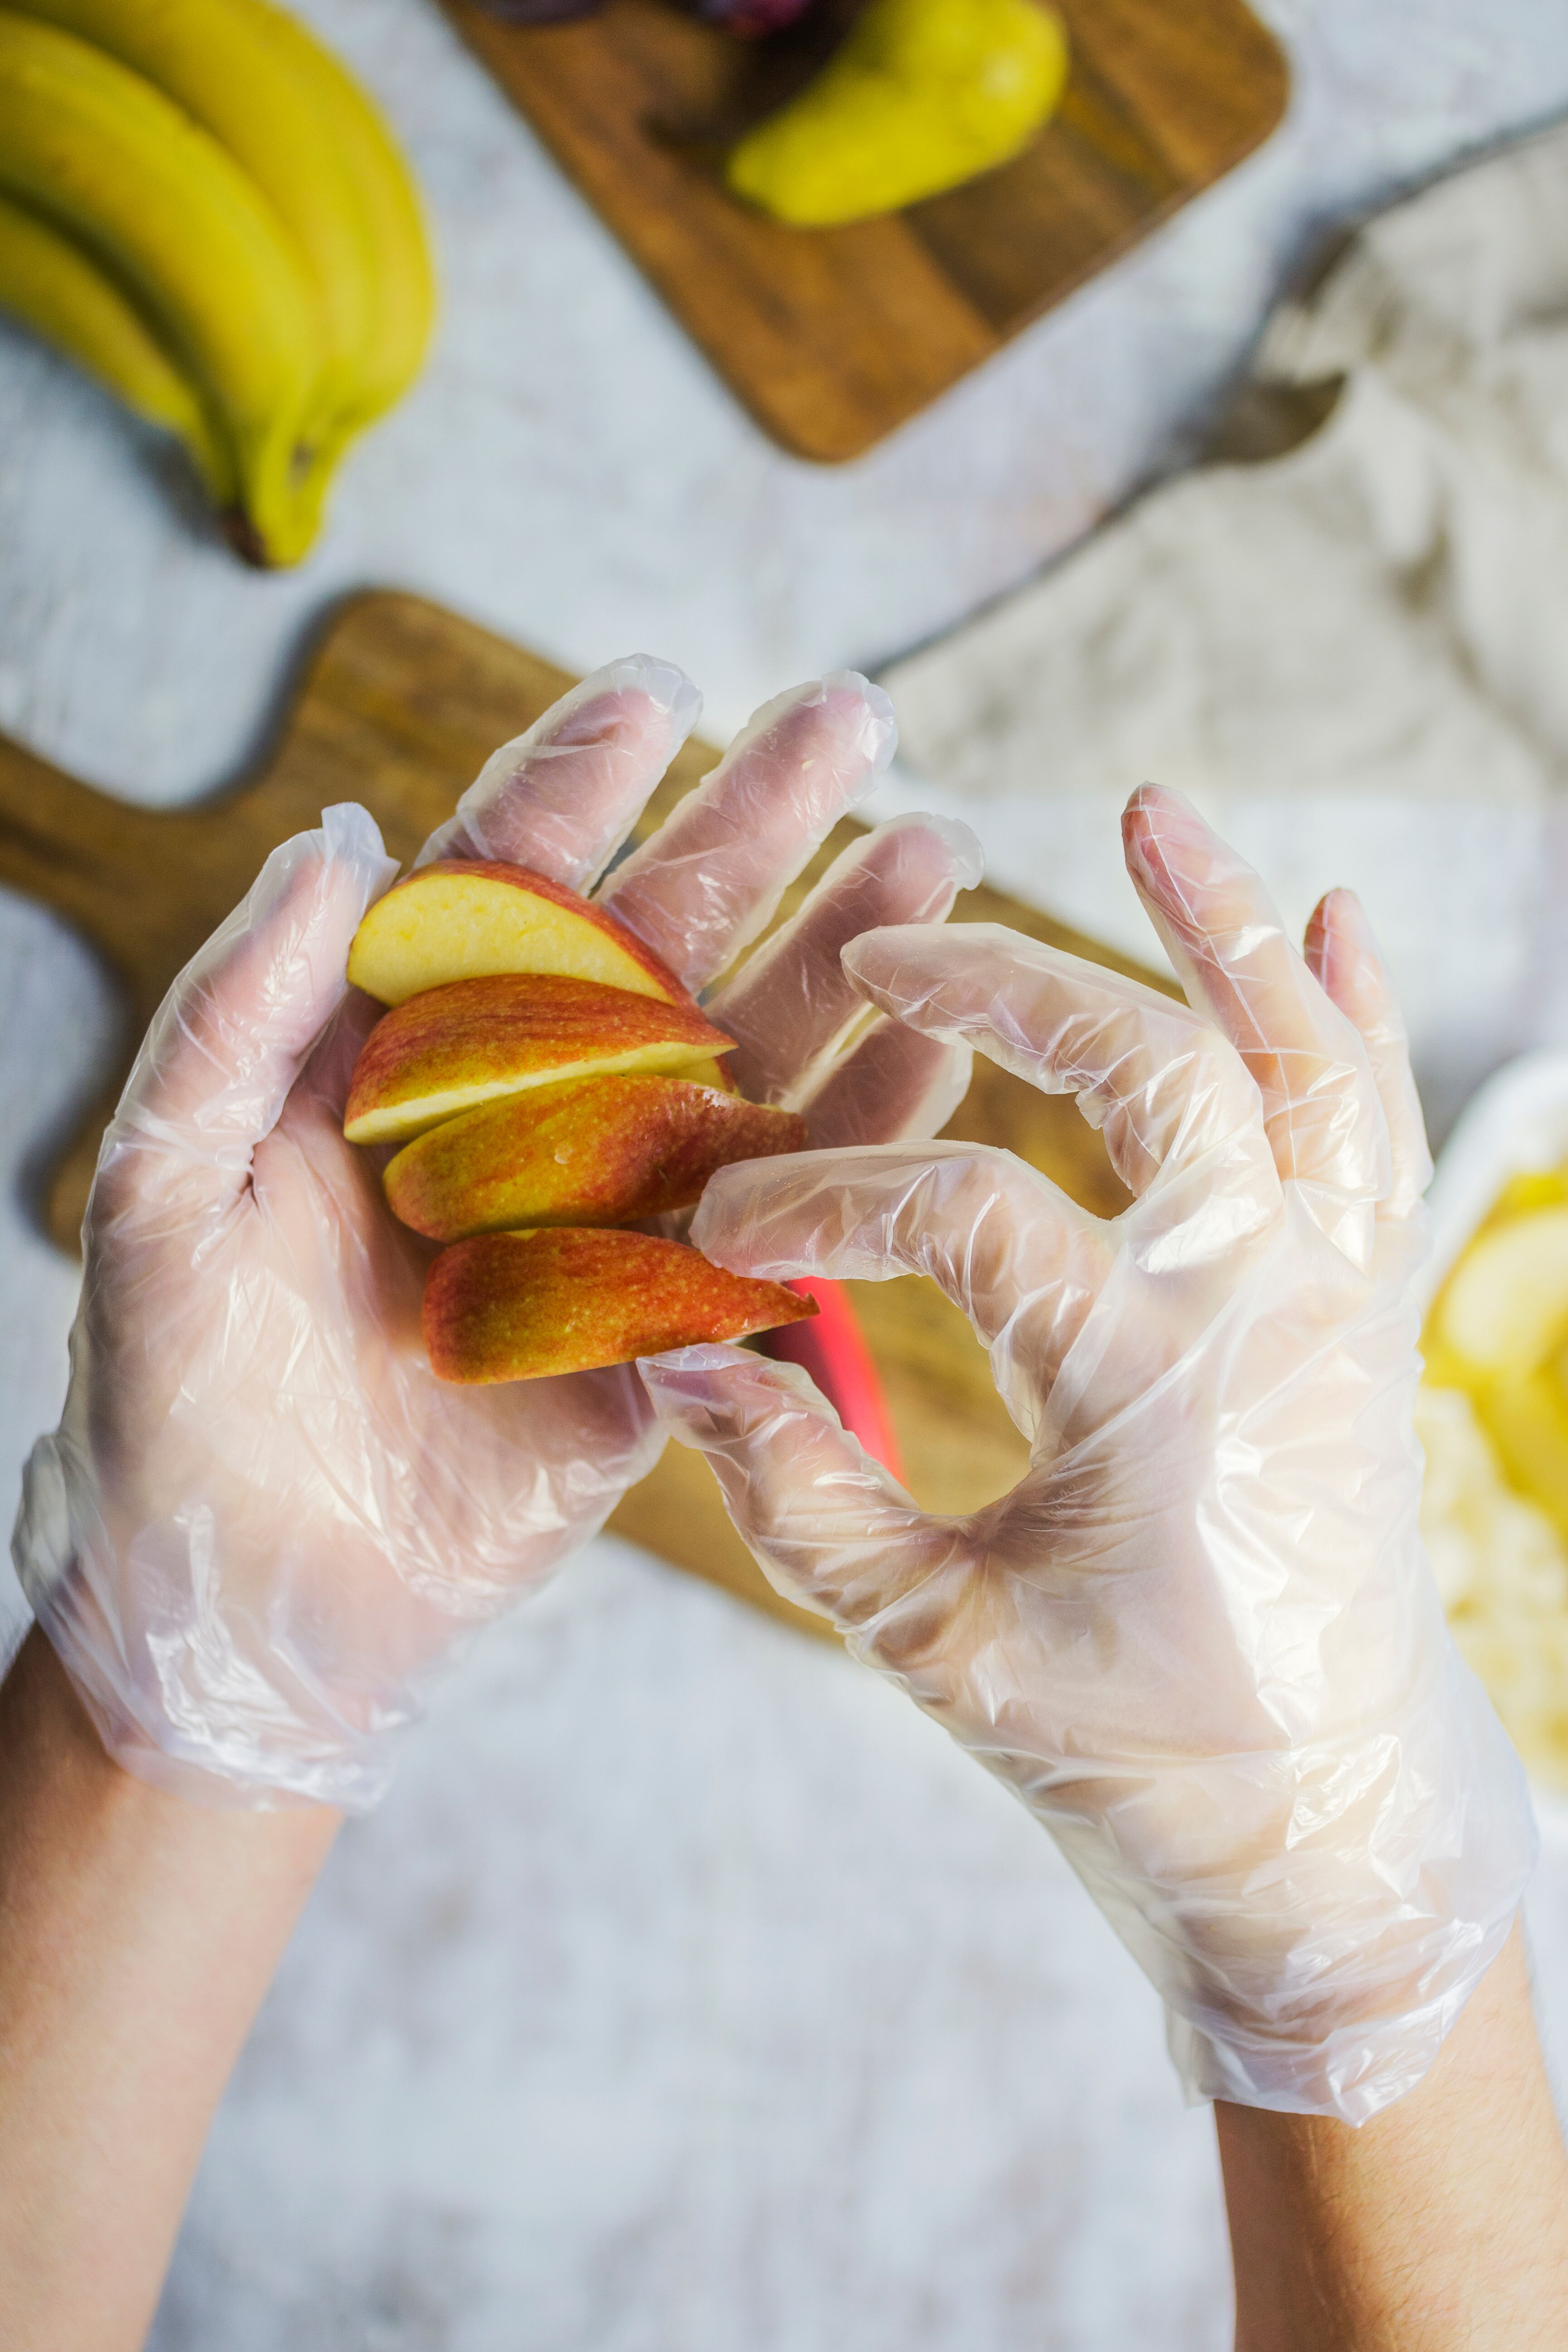 Vegware's compostale food handler gloved hands holding aplle slices